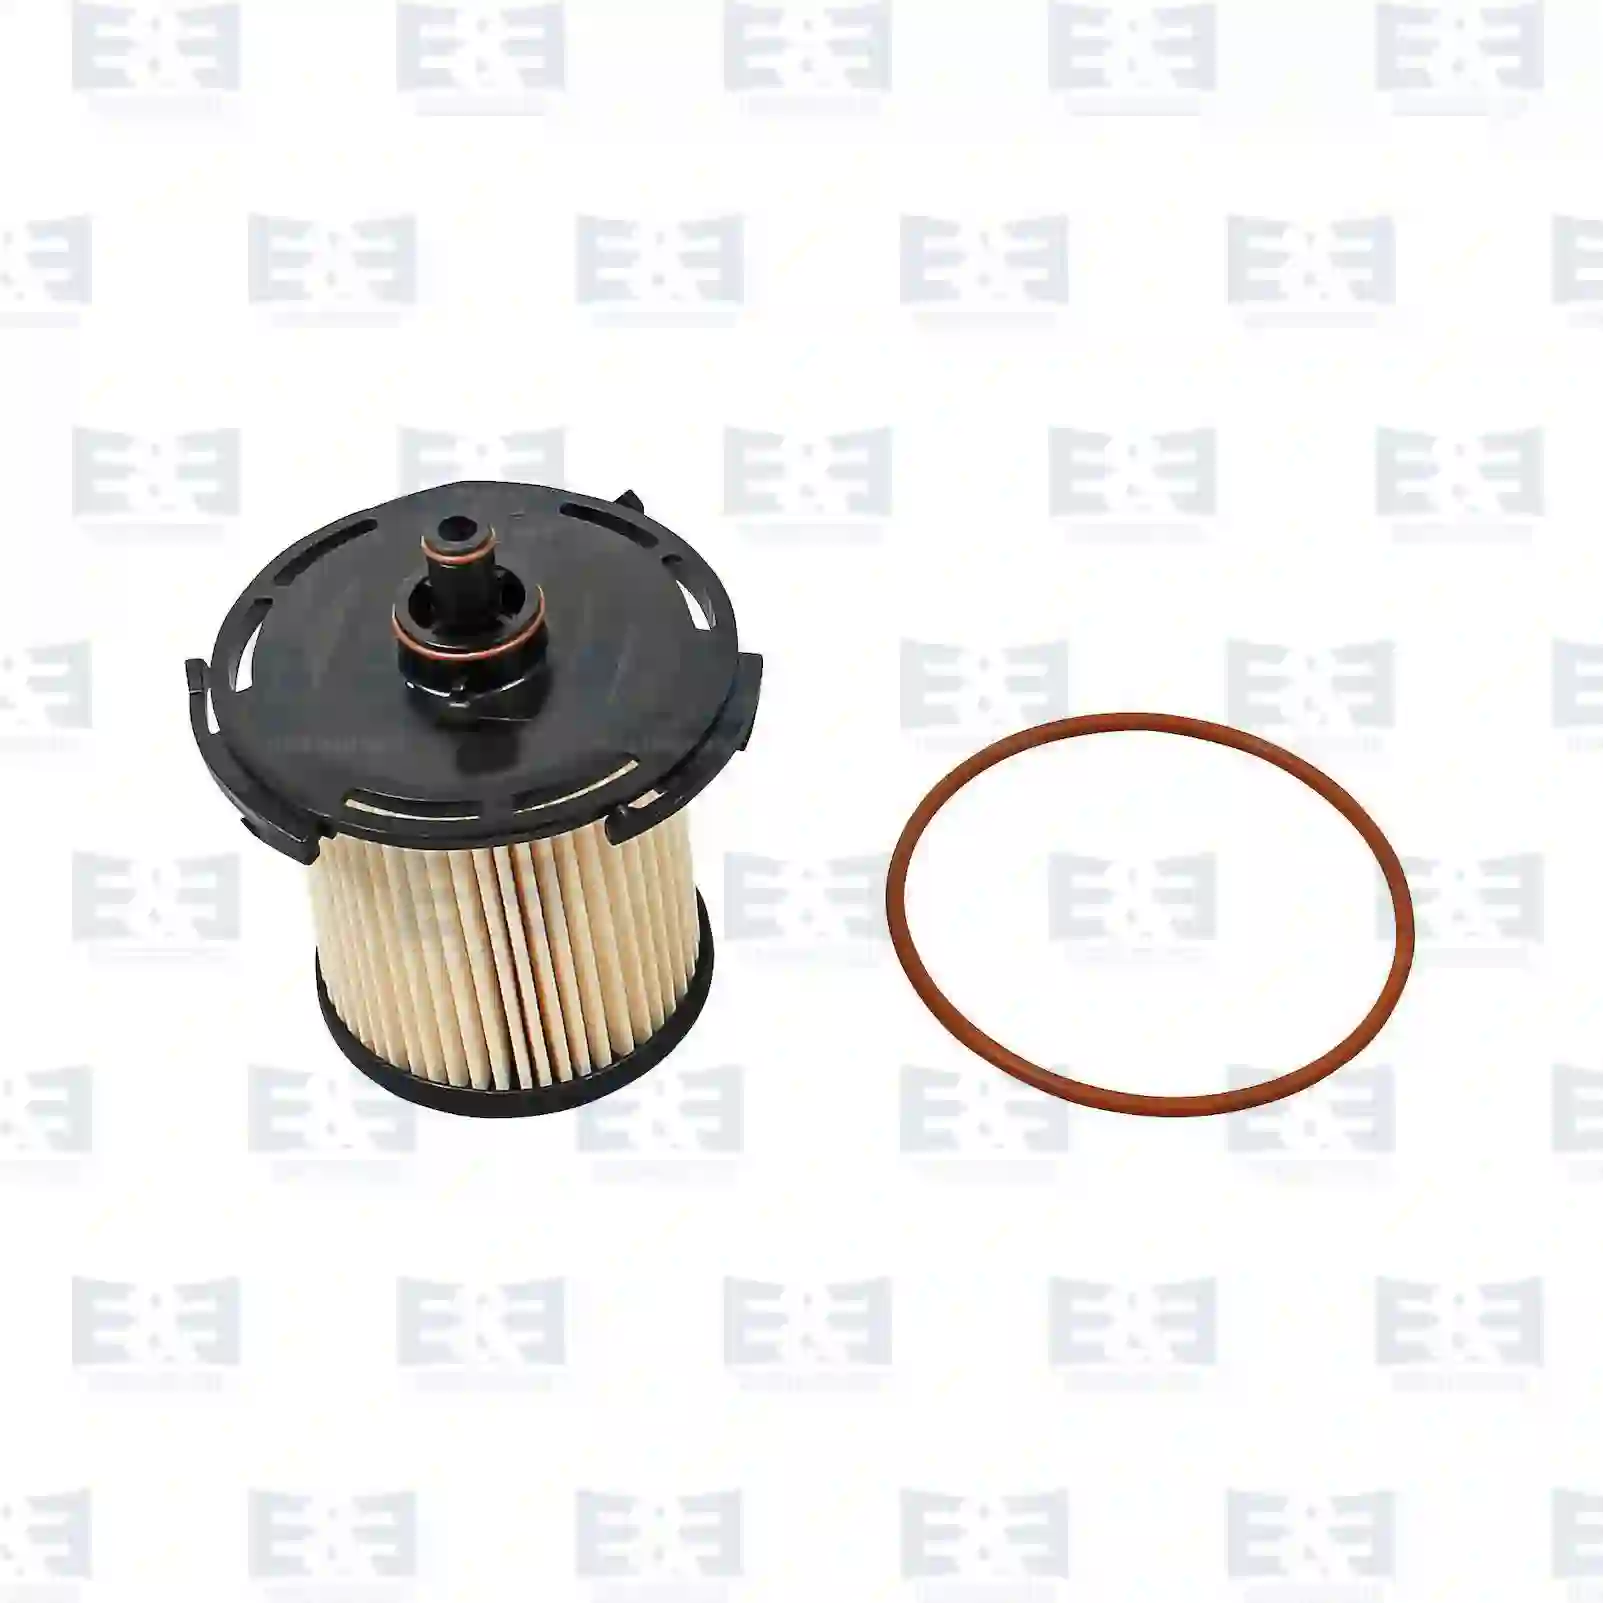 Fuel filter insert, 2E2287690, 1727201, 1764944, 1837319, 1930091, CC11-9176-BA, CC11-9176-BB, CC11-9176-BC, CC11-9176-CA, ZG10175-0008 ||  2E2287690 E&E Truck Spare Parts | Truck Spare Parts, Auotomotive Spare Parts Fuel filter insert, 2E2287690, 1727201, 1764944, 1837319, 1930091, CC11-9176-BA, CC11-9176-BB, CC11-9176-BC, CC11-9176-CA, ZG10175-0008 ||  2E2287690 E&E Truck Spare Parts | Truck Spare Parts, Auotomotive Spare Parts